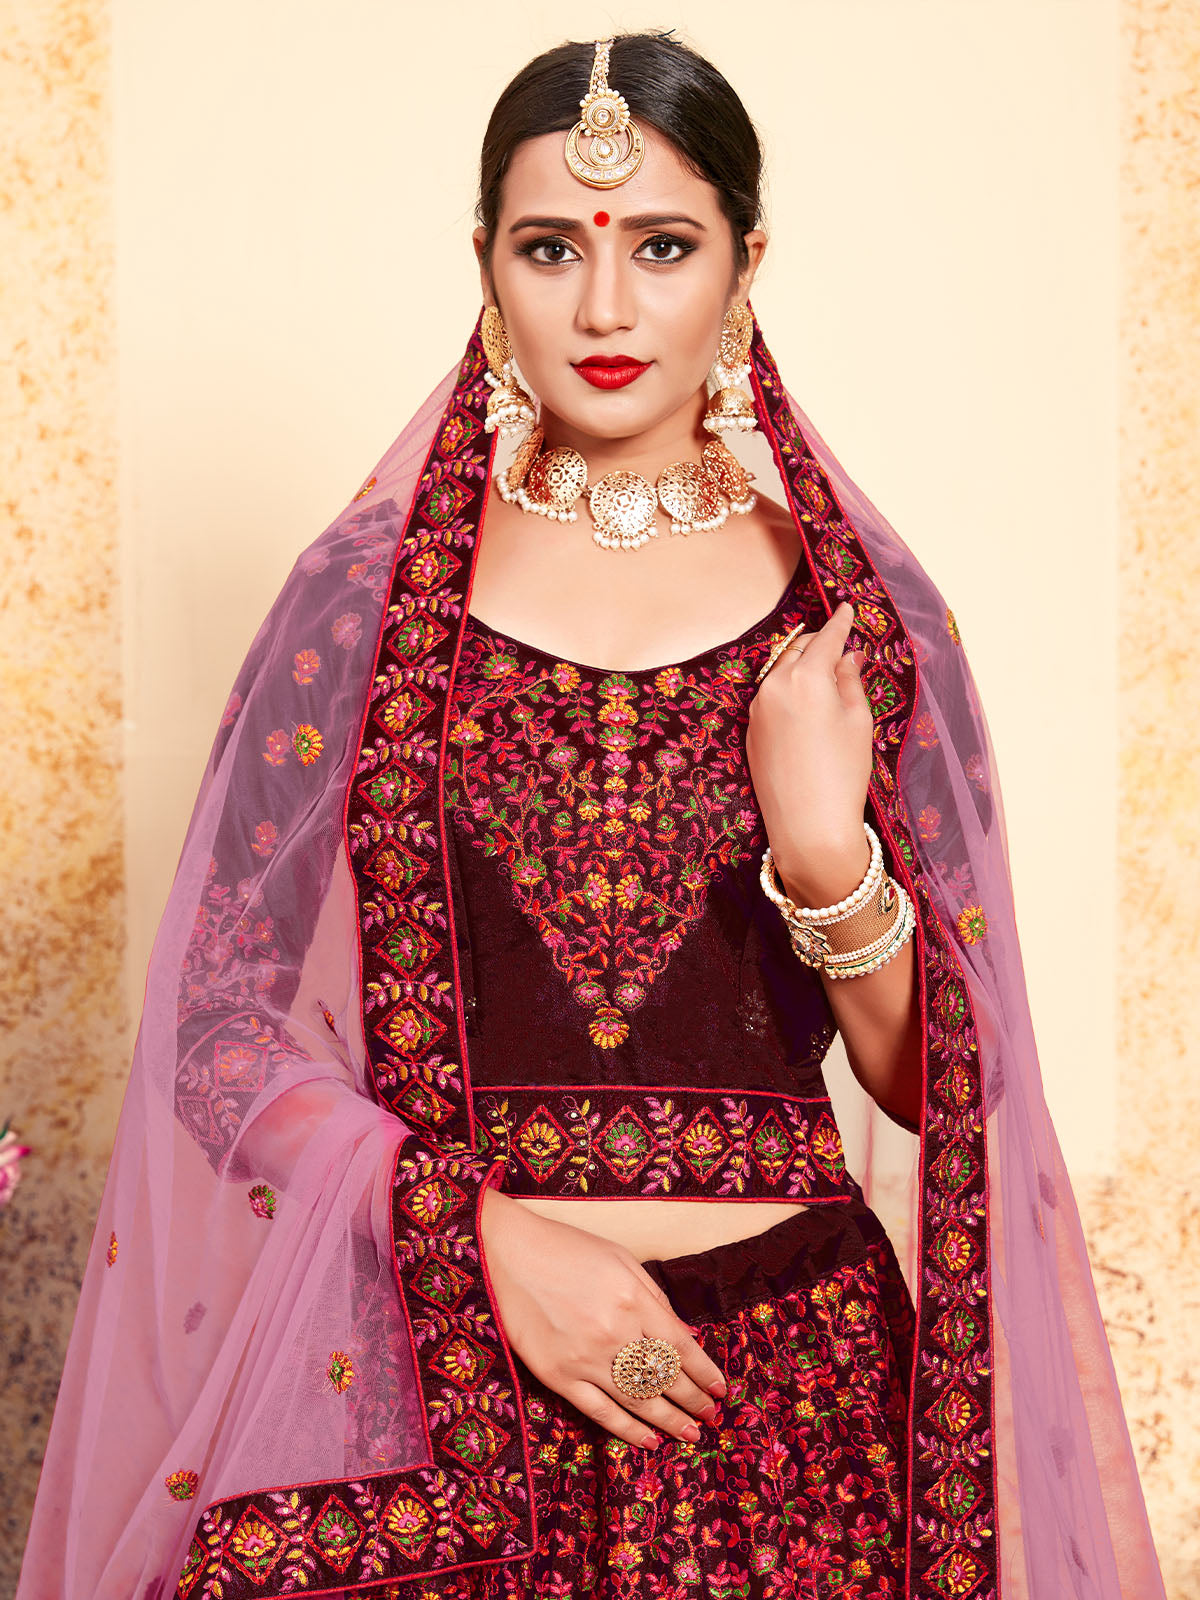 10 Beautiful Wedding Sleeveless Lehengas | Indian outfits lehenga, Modern  lehenga designs, Indian fashion dresses